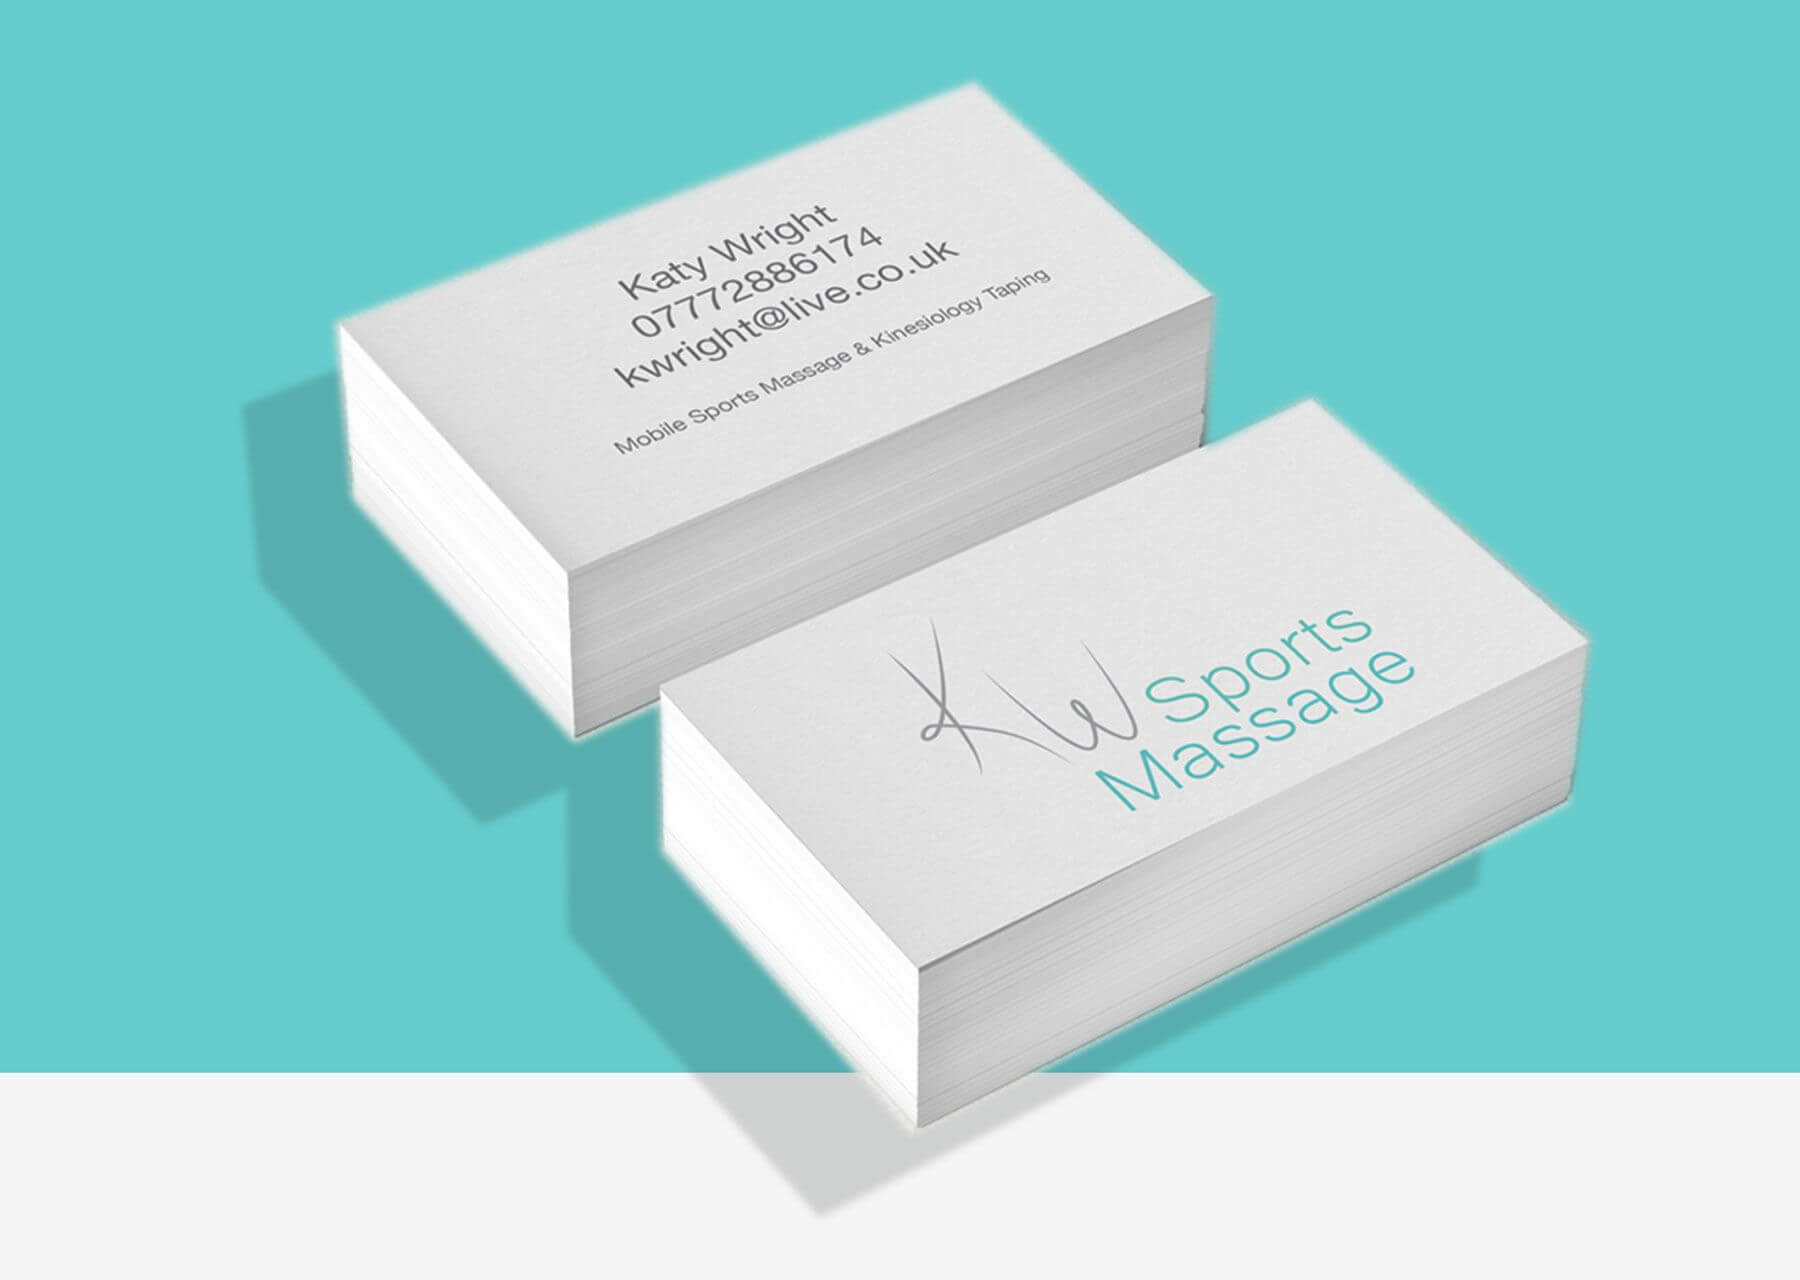 Kw Sports Massage Business Card Designfor Kw Sports Massage With Massage Therapy Business Card Templates